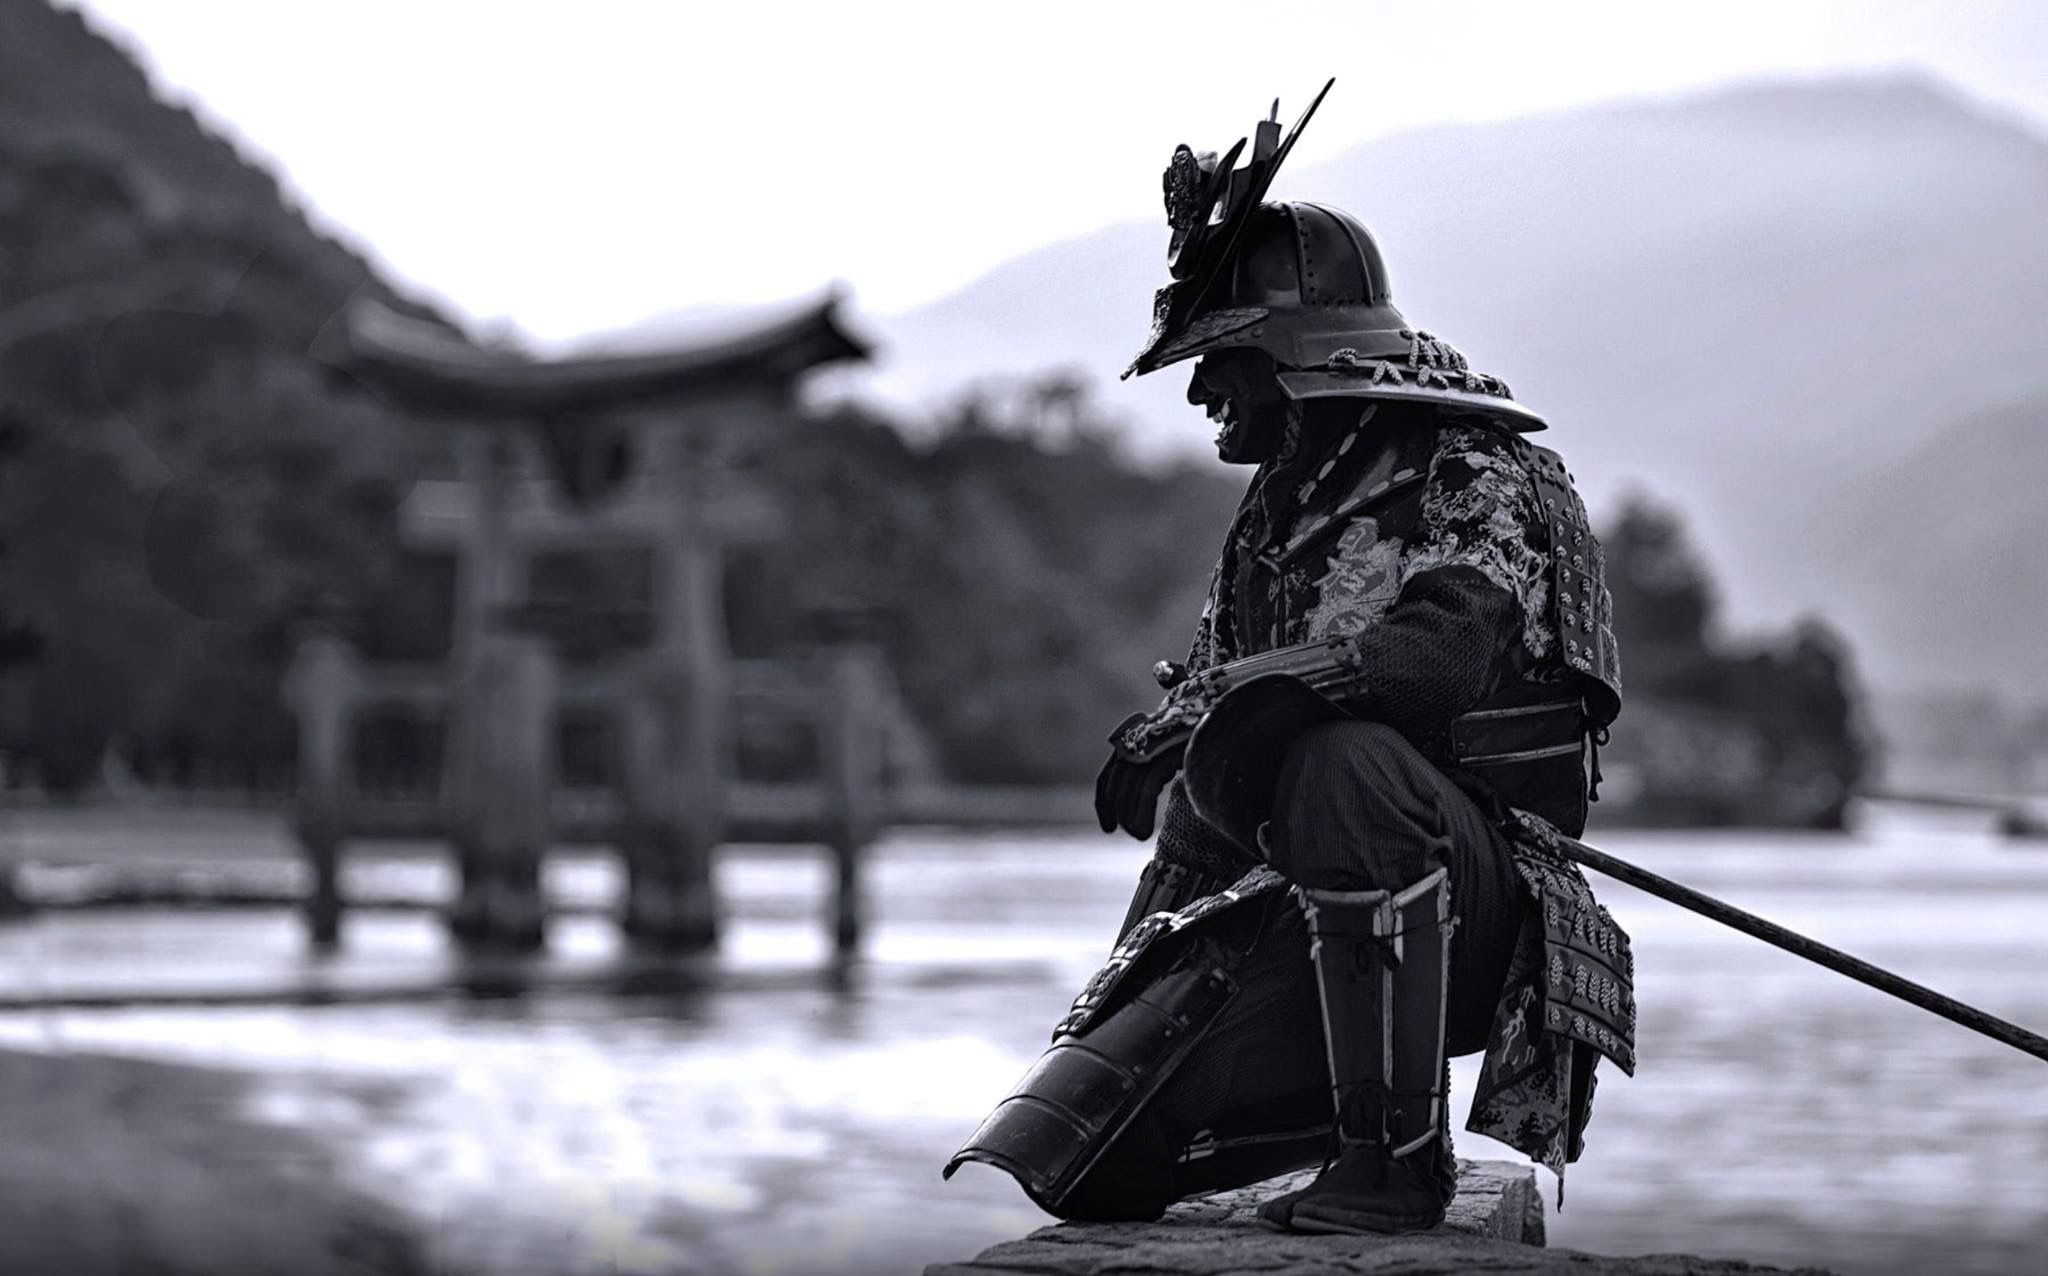 Samurai Katana